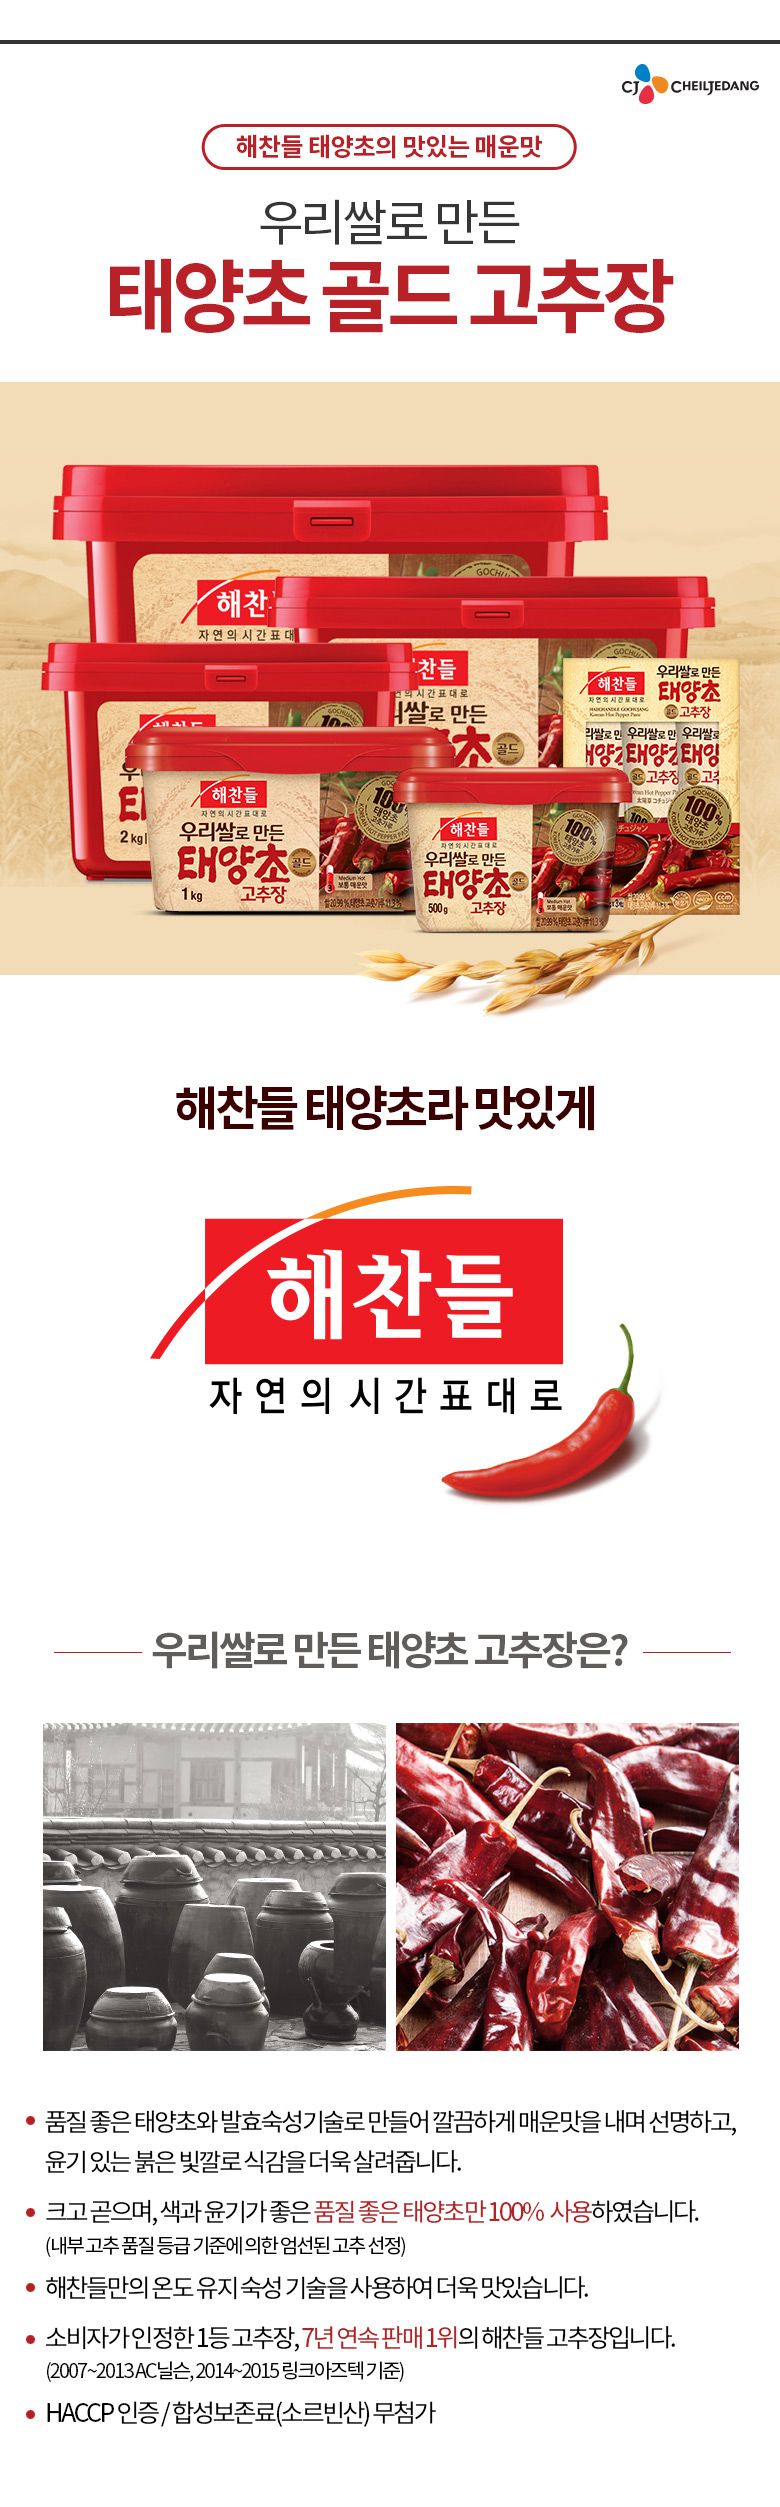 韓國食品-[CJ] Haechandle Hot Pepper Paste 1kg